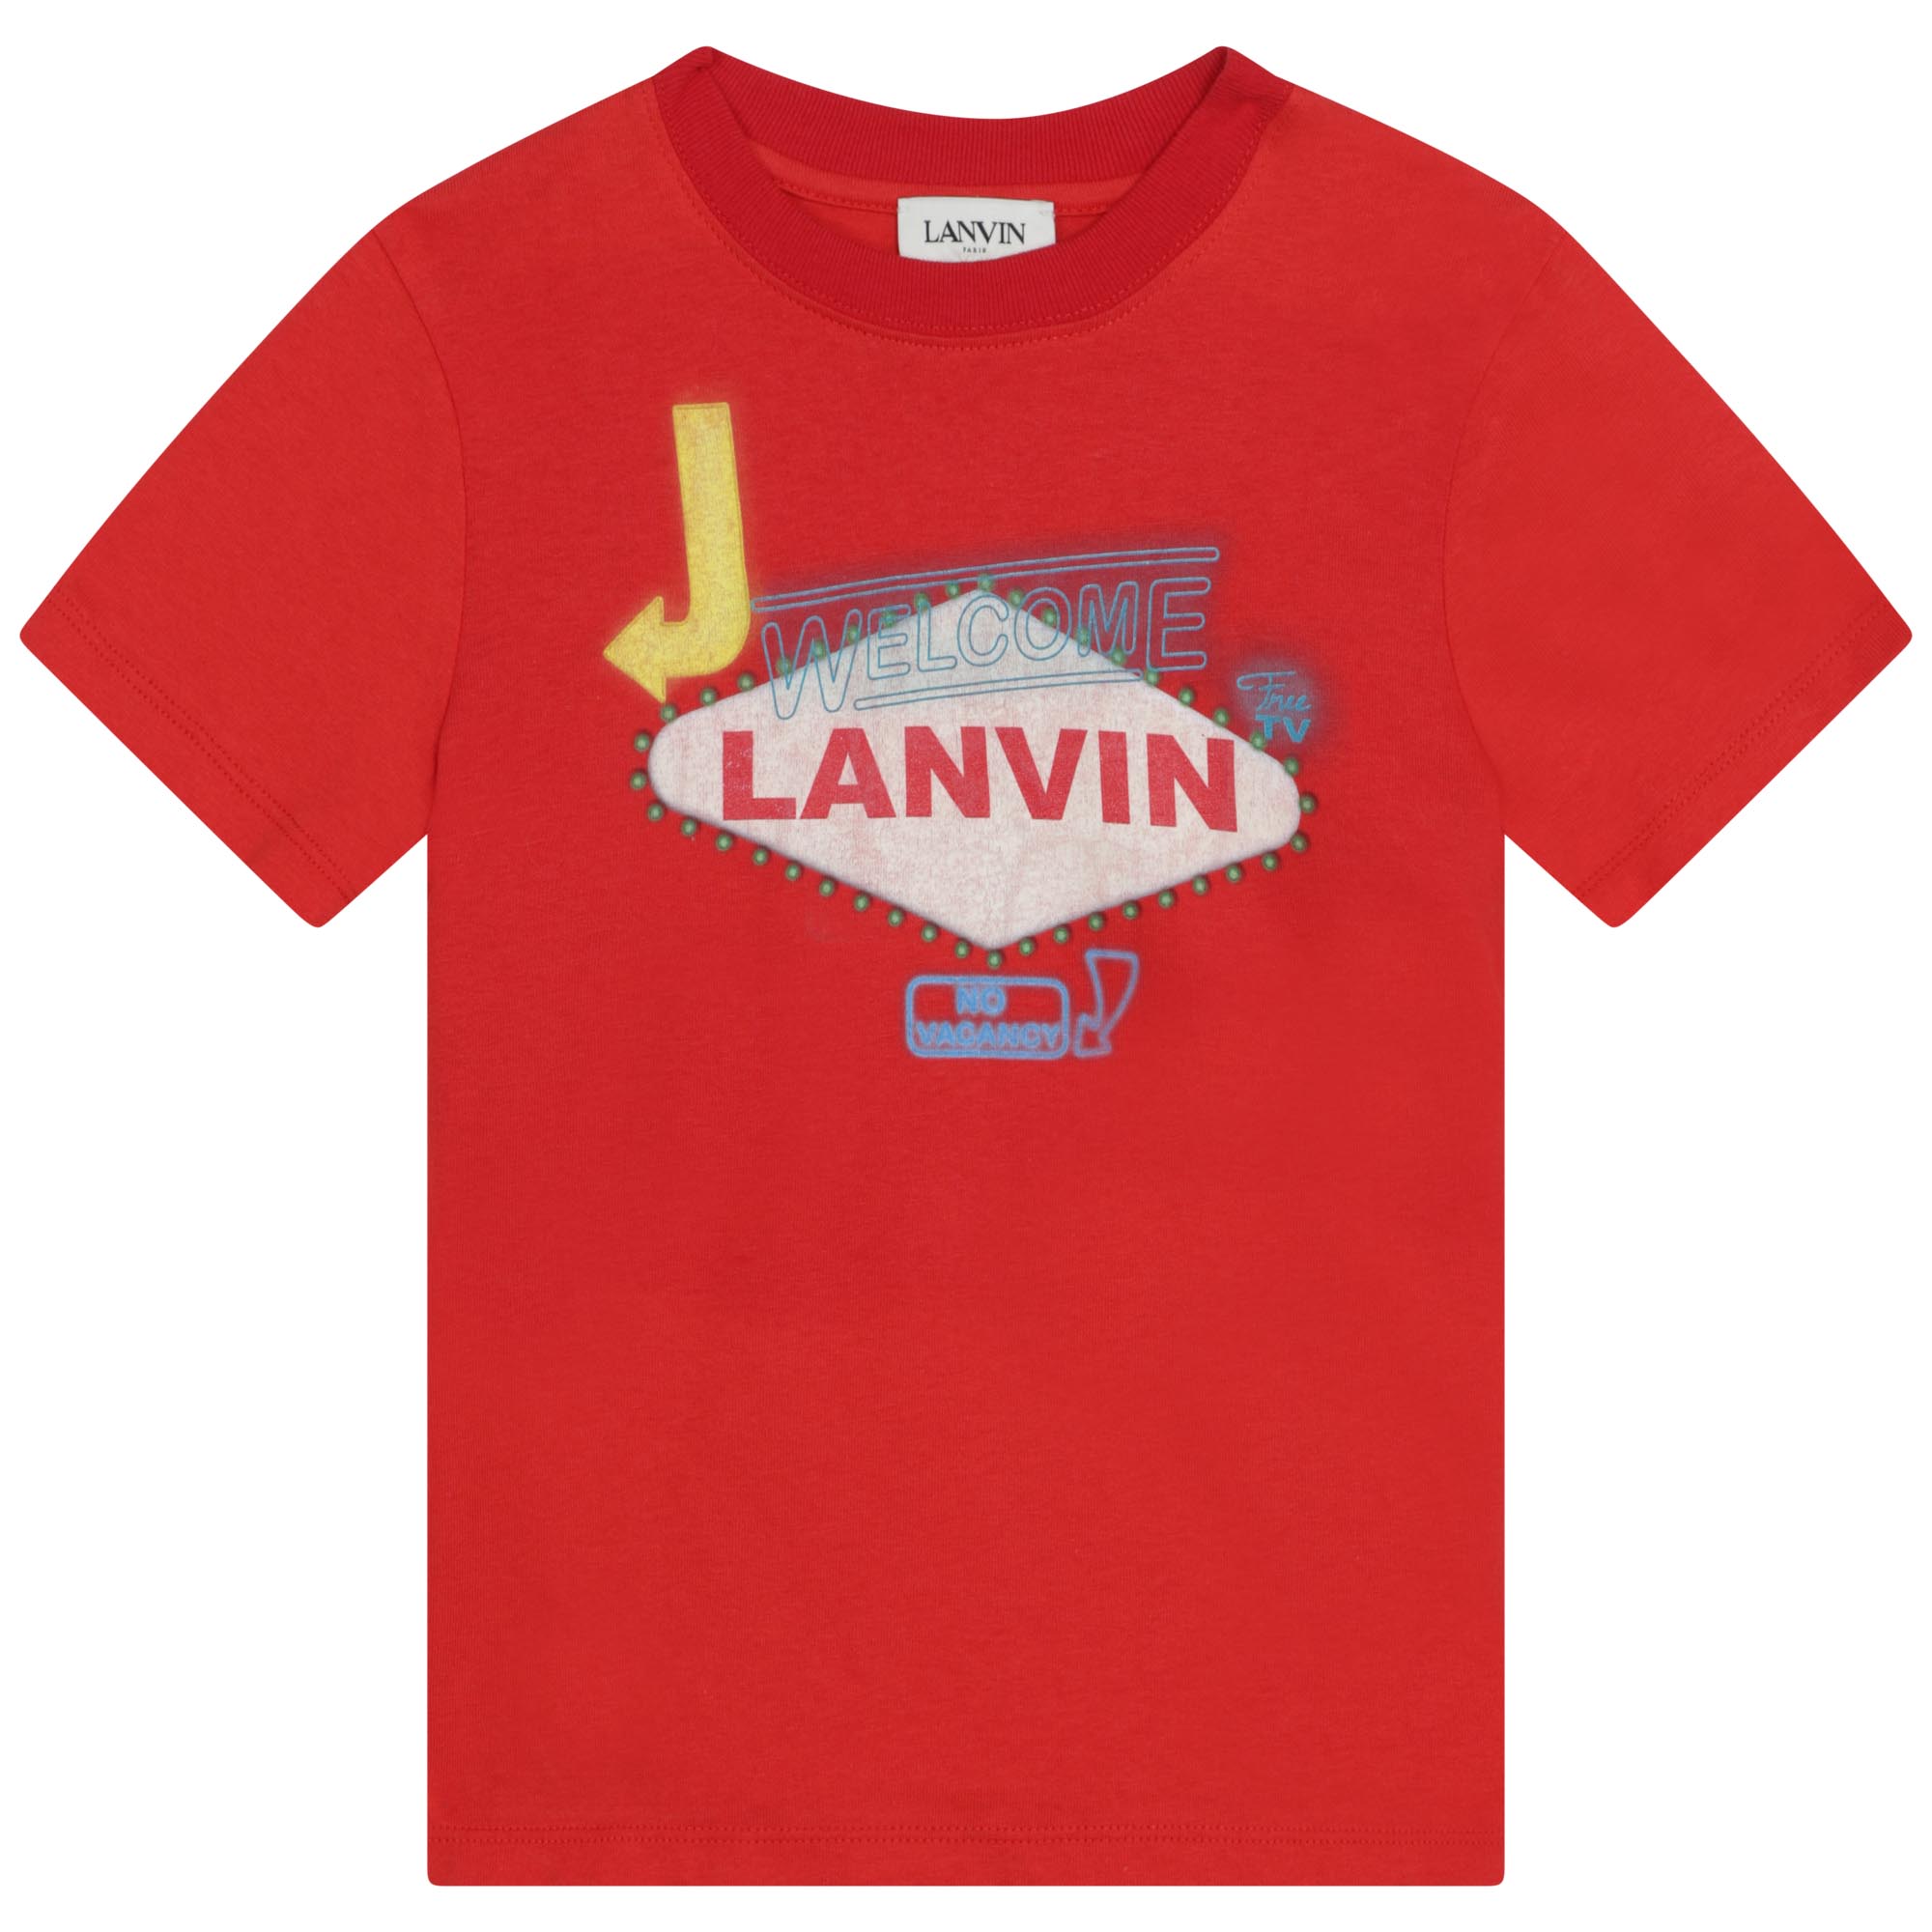 Baumwoll-Shirt mit Print LANVIN Für JUNGE